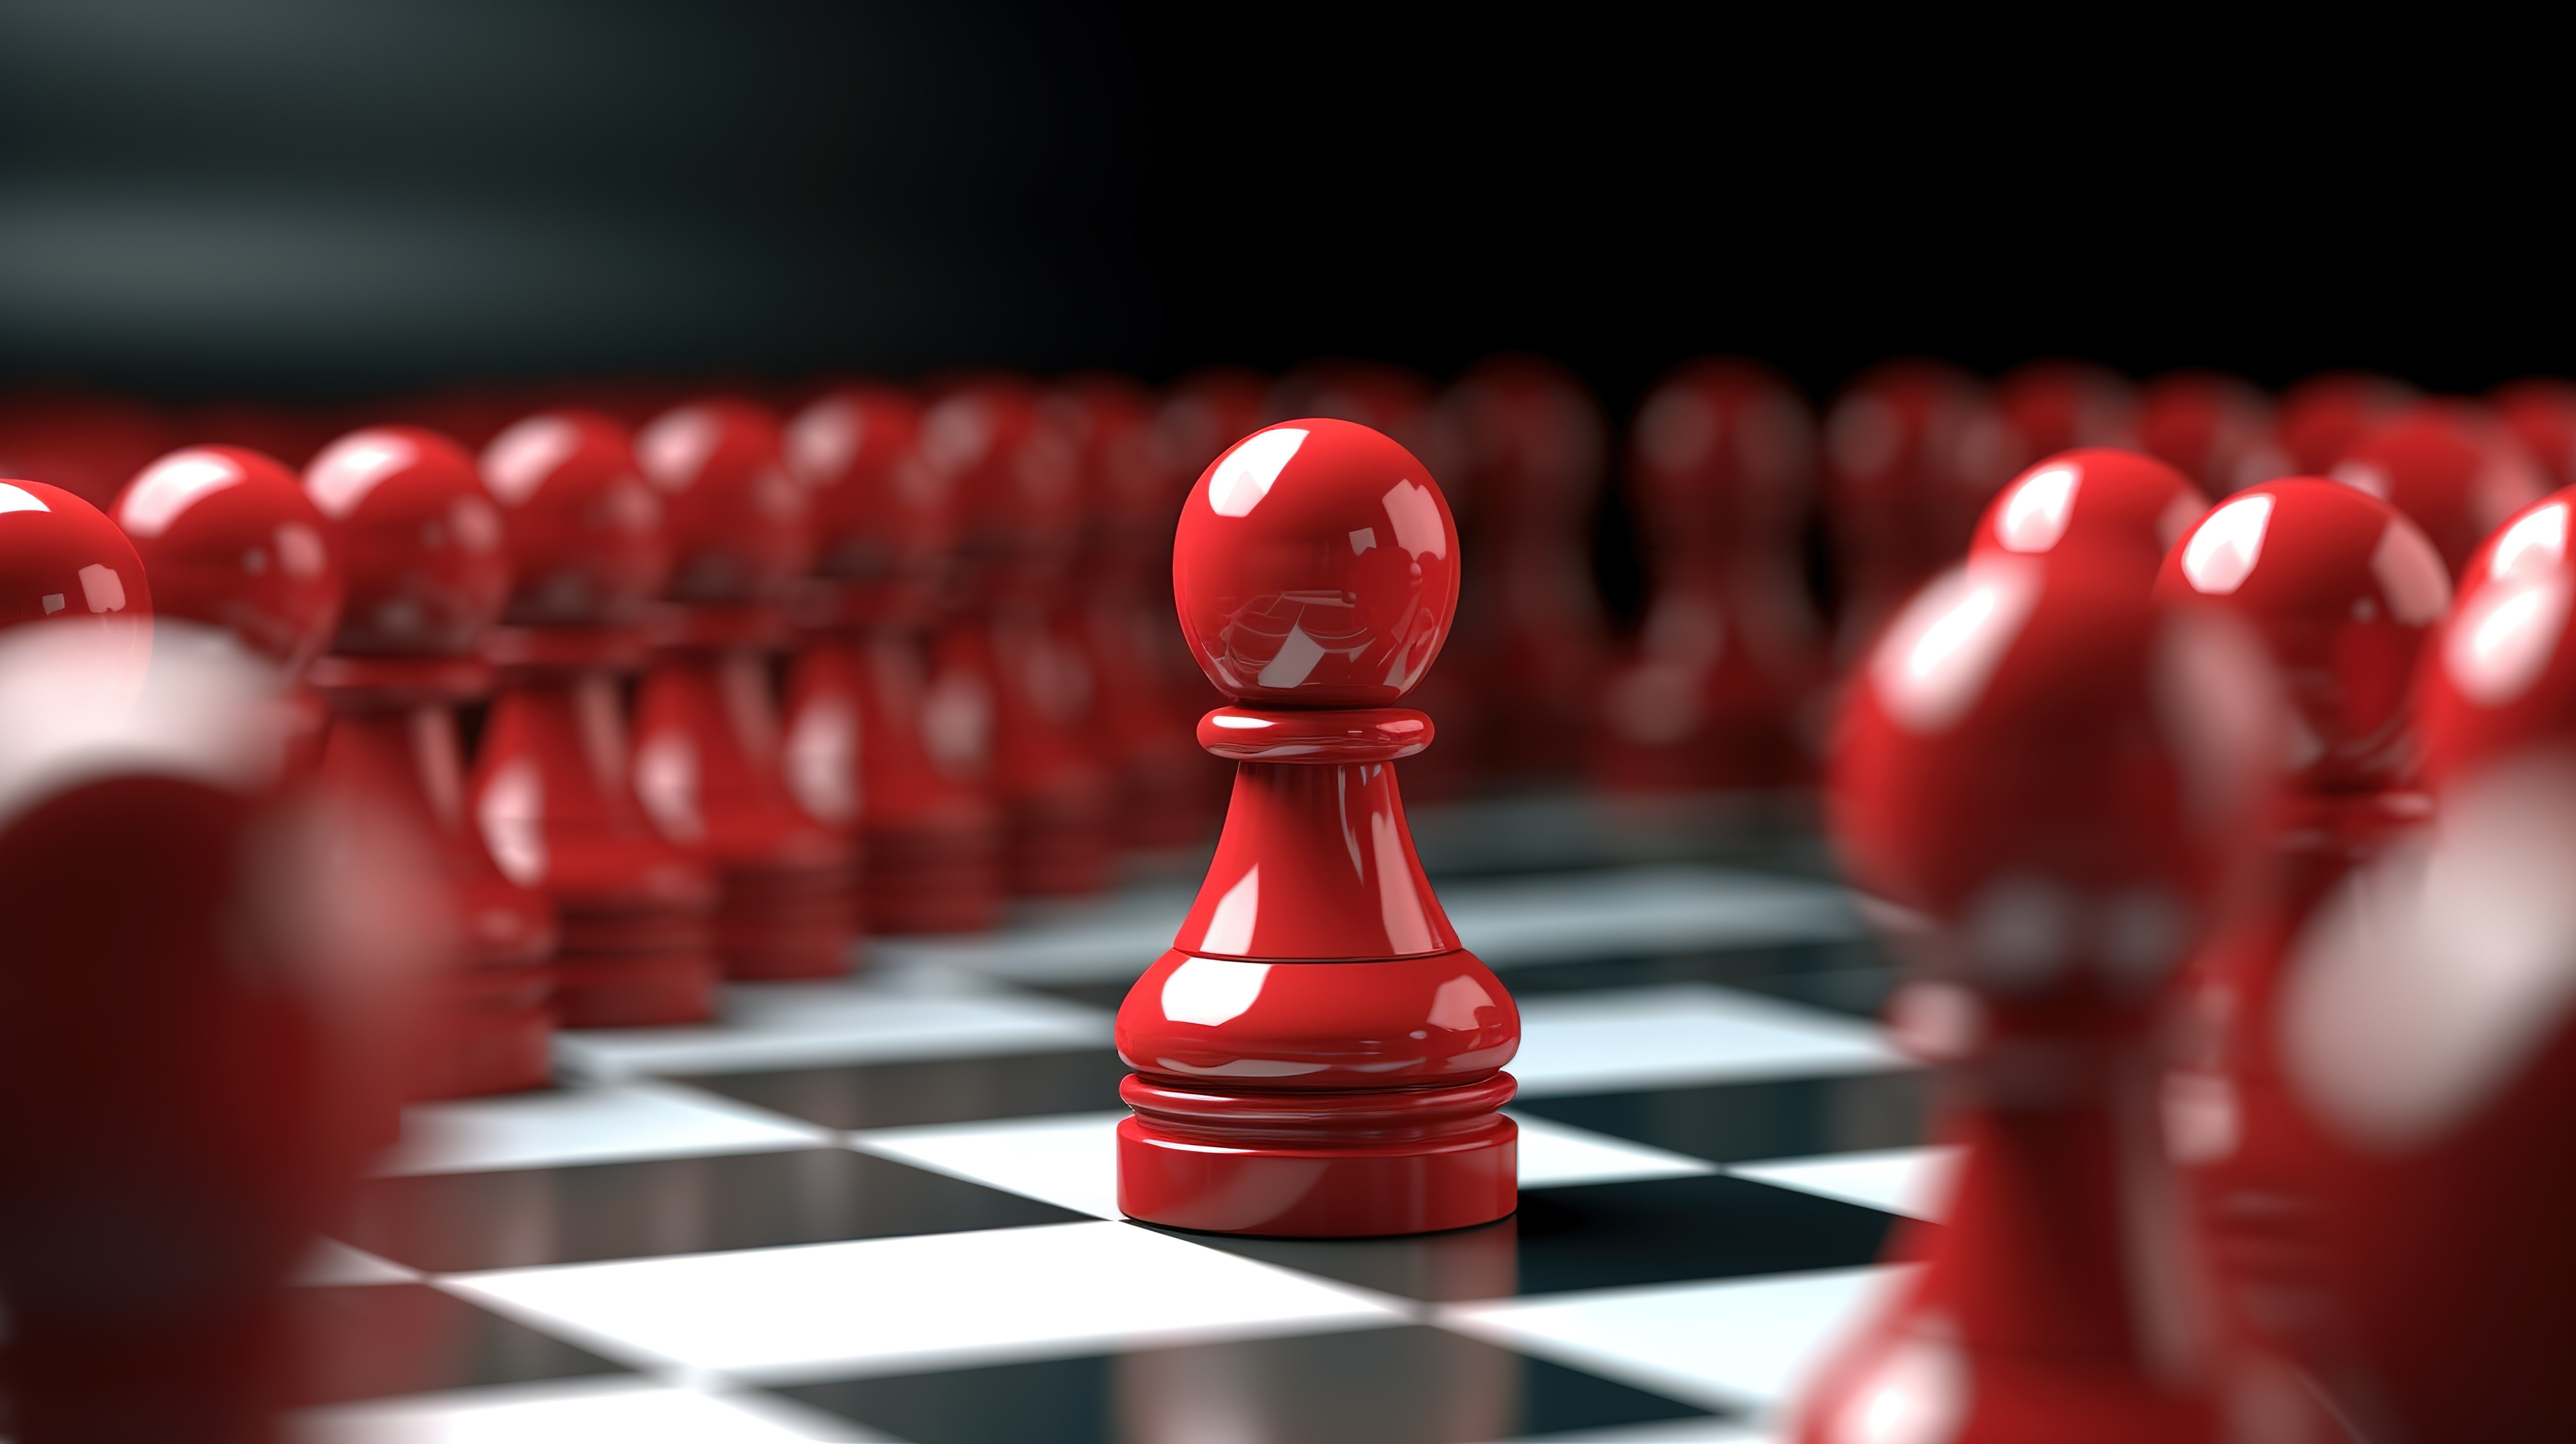 红色国际象棋棋子是领导力概念的 3D 视觉表现图片